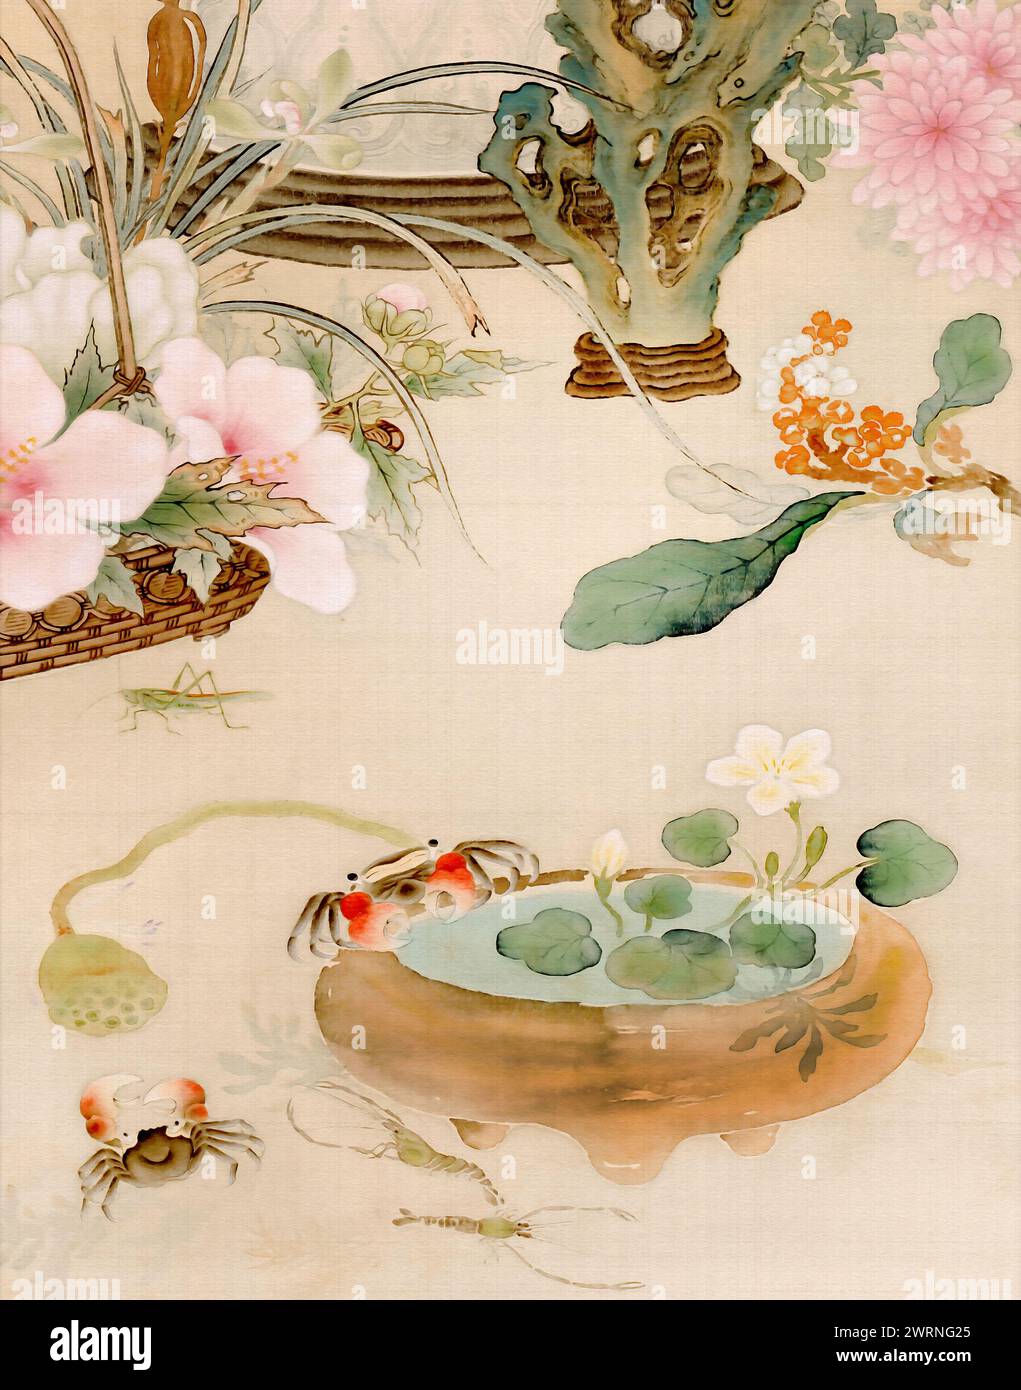 Magnifique motif floral oriental avec de charmants crabes et un homard. Cette illustration fabriquée numériquement met en valeur des tons pastel doux avec une texture Banque D'Images